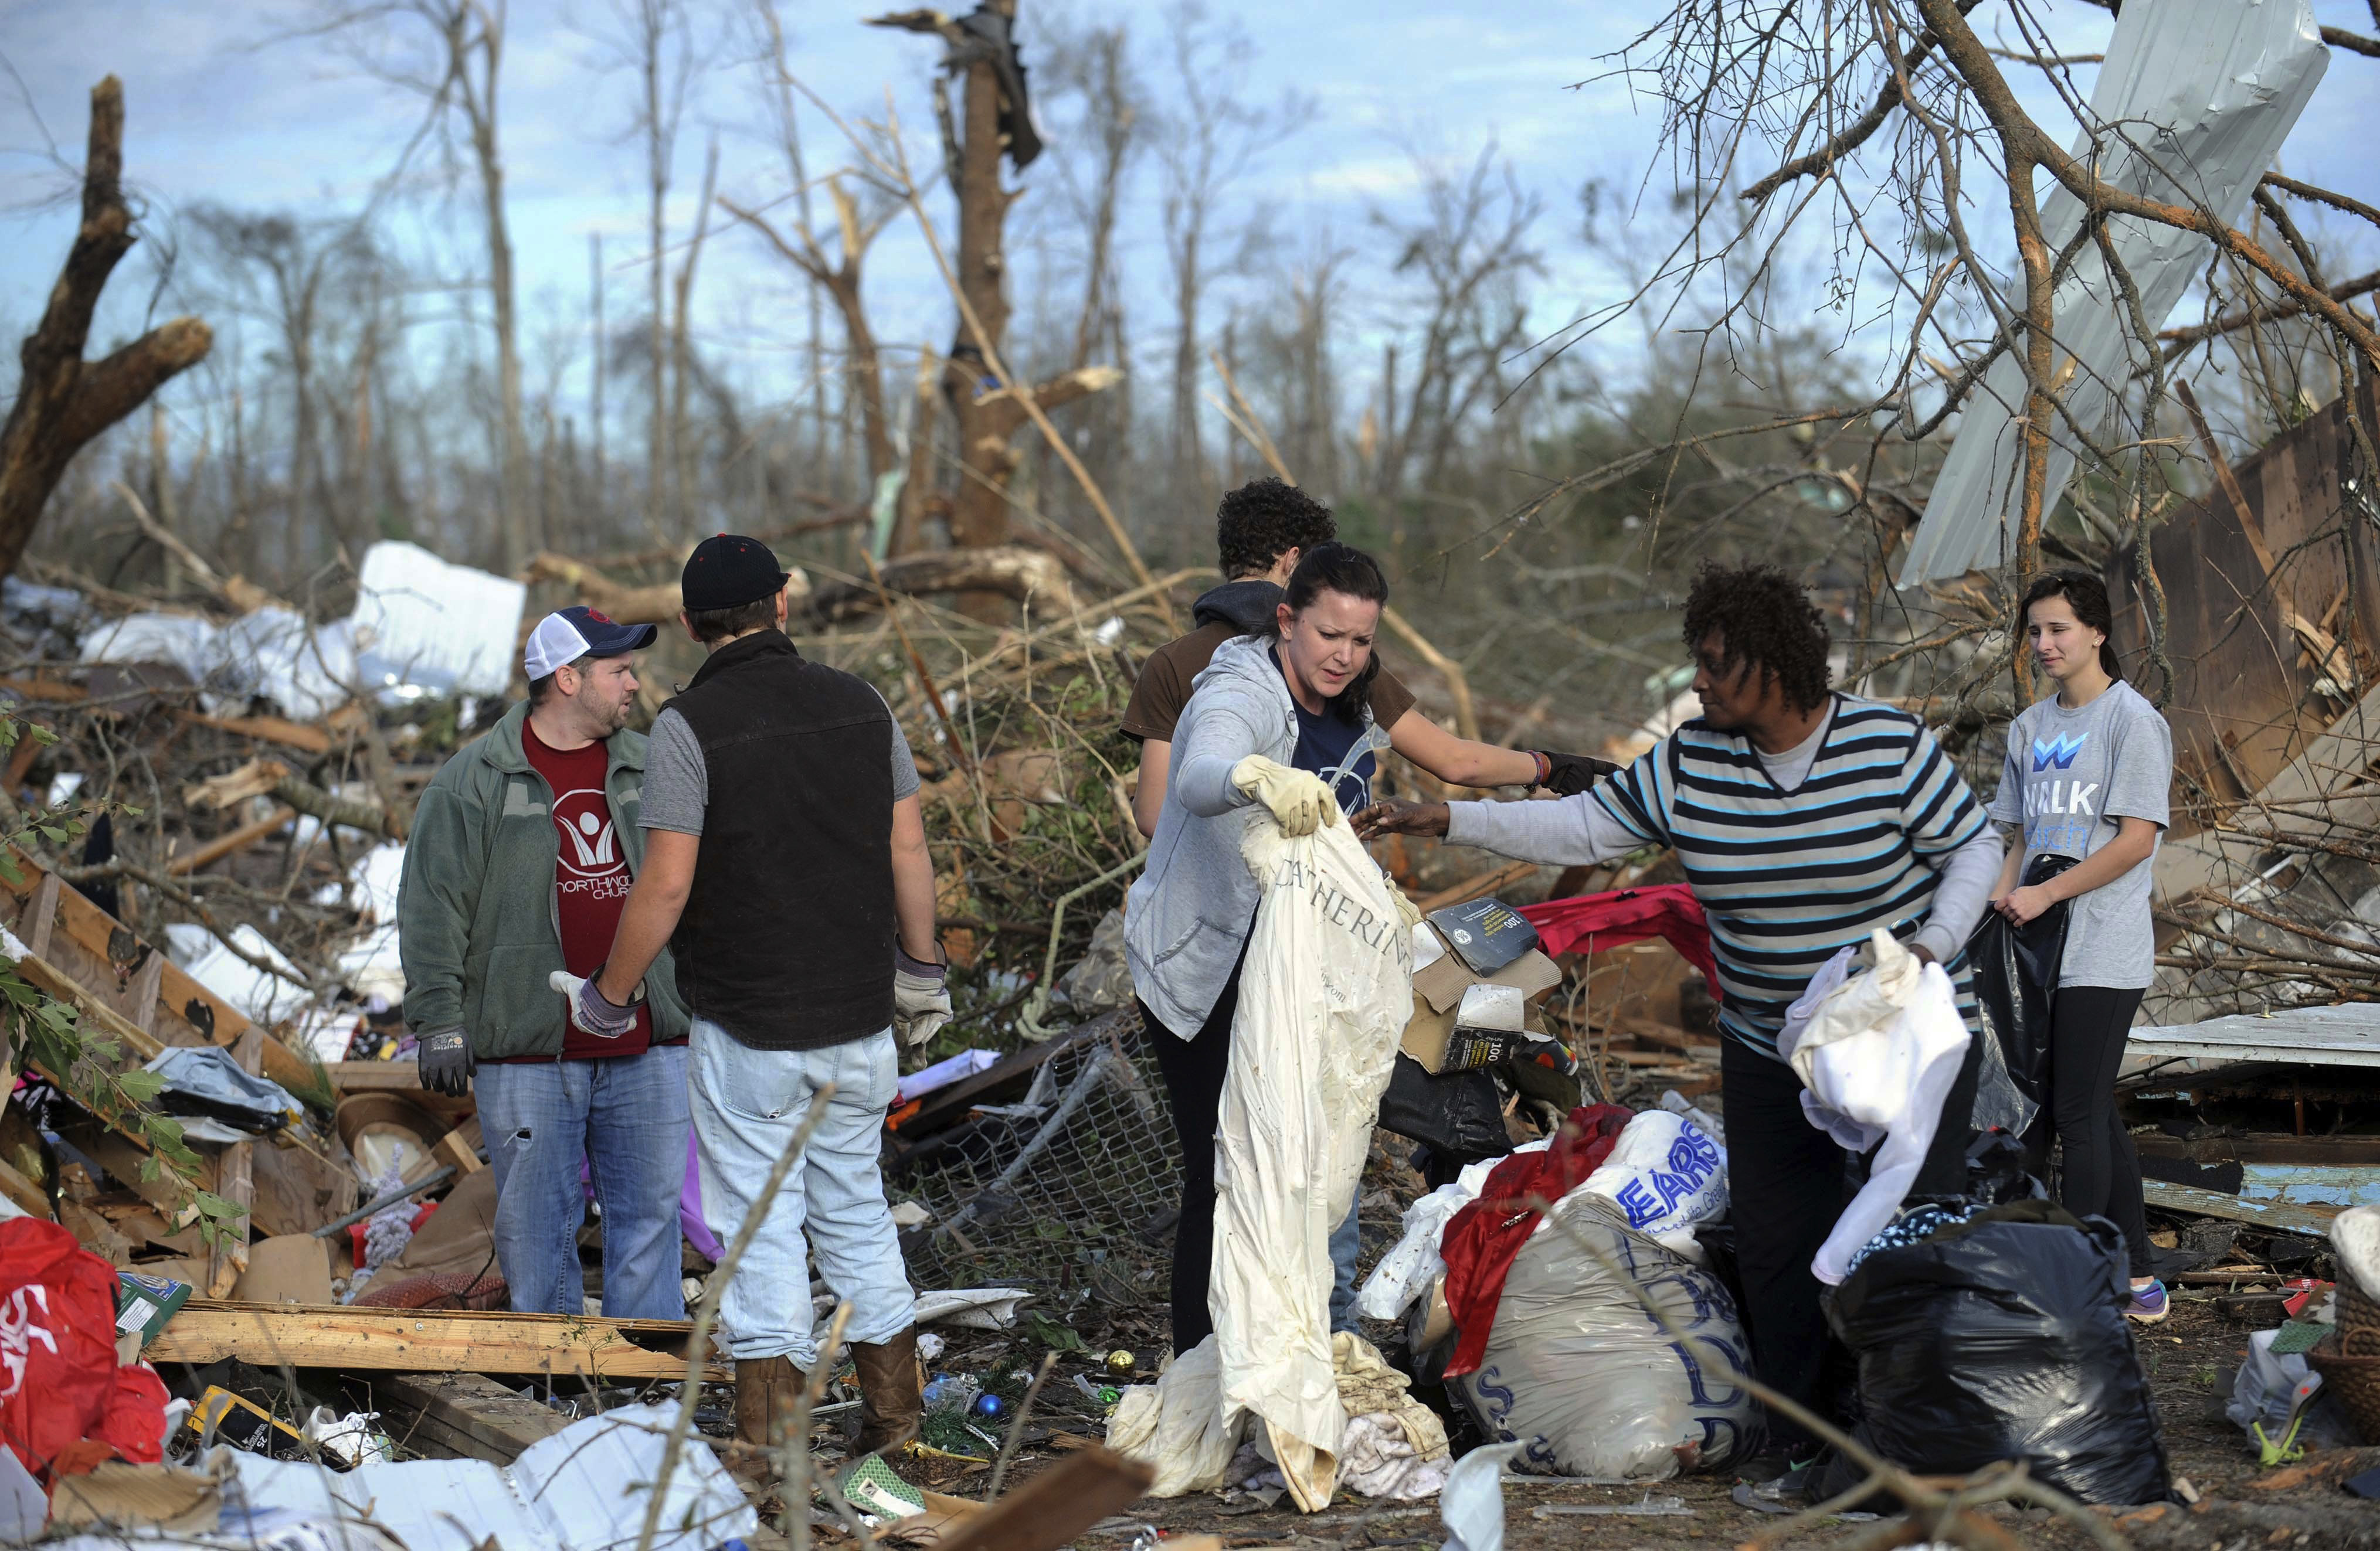 Доброволци помагат в Хетисбърг, Мисисипи на хора, чийто дом е унищожен от торнадо